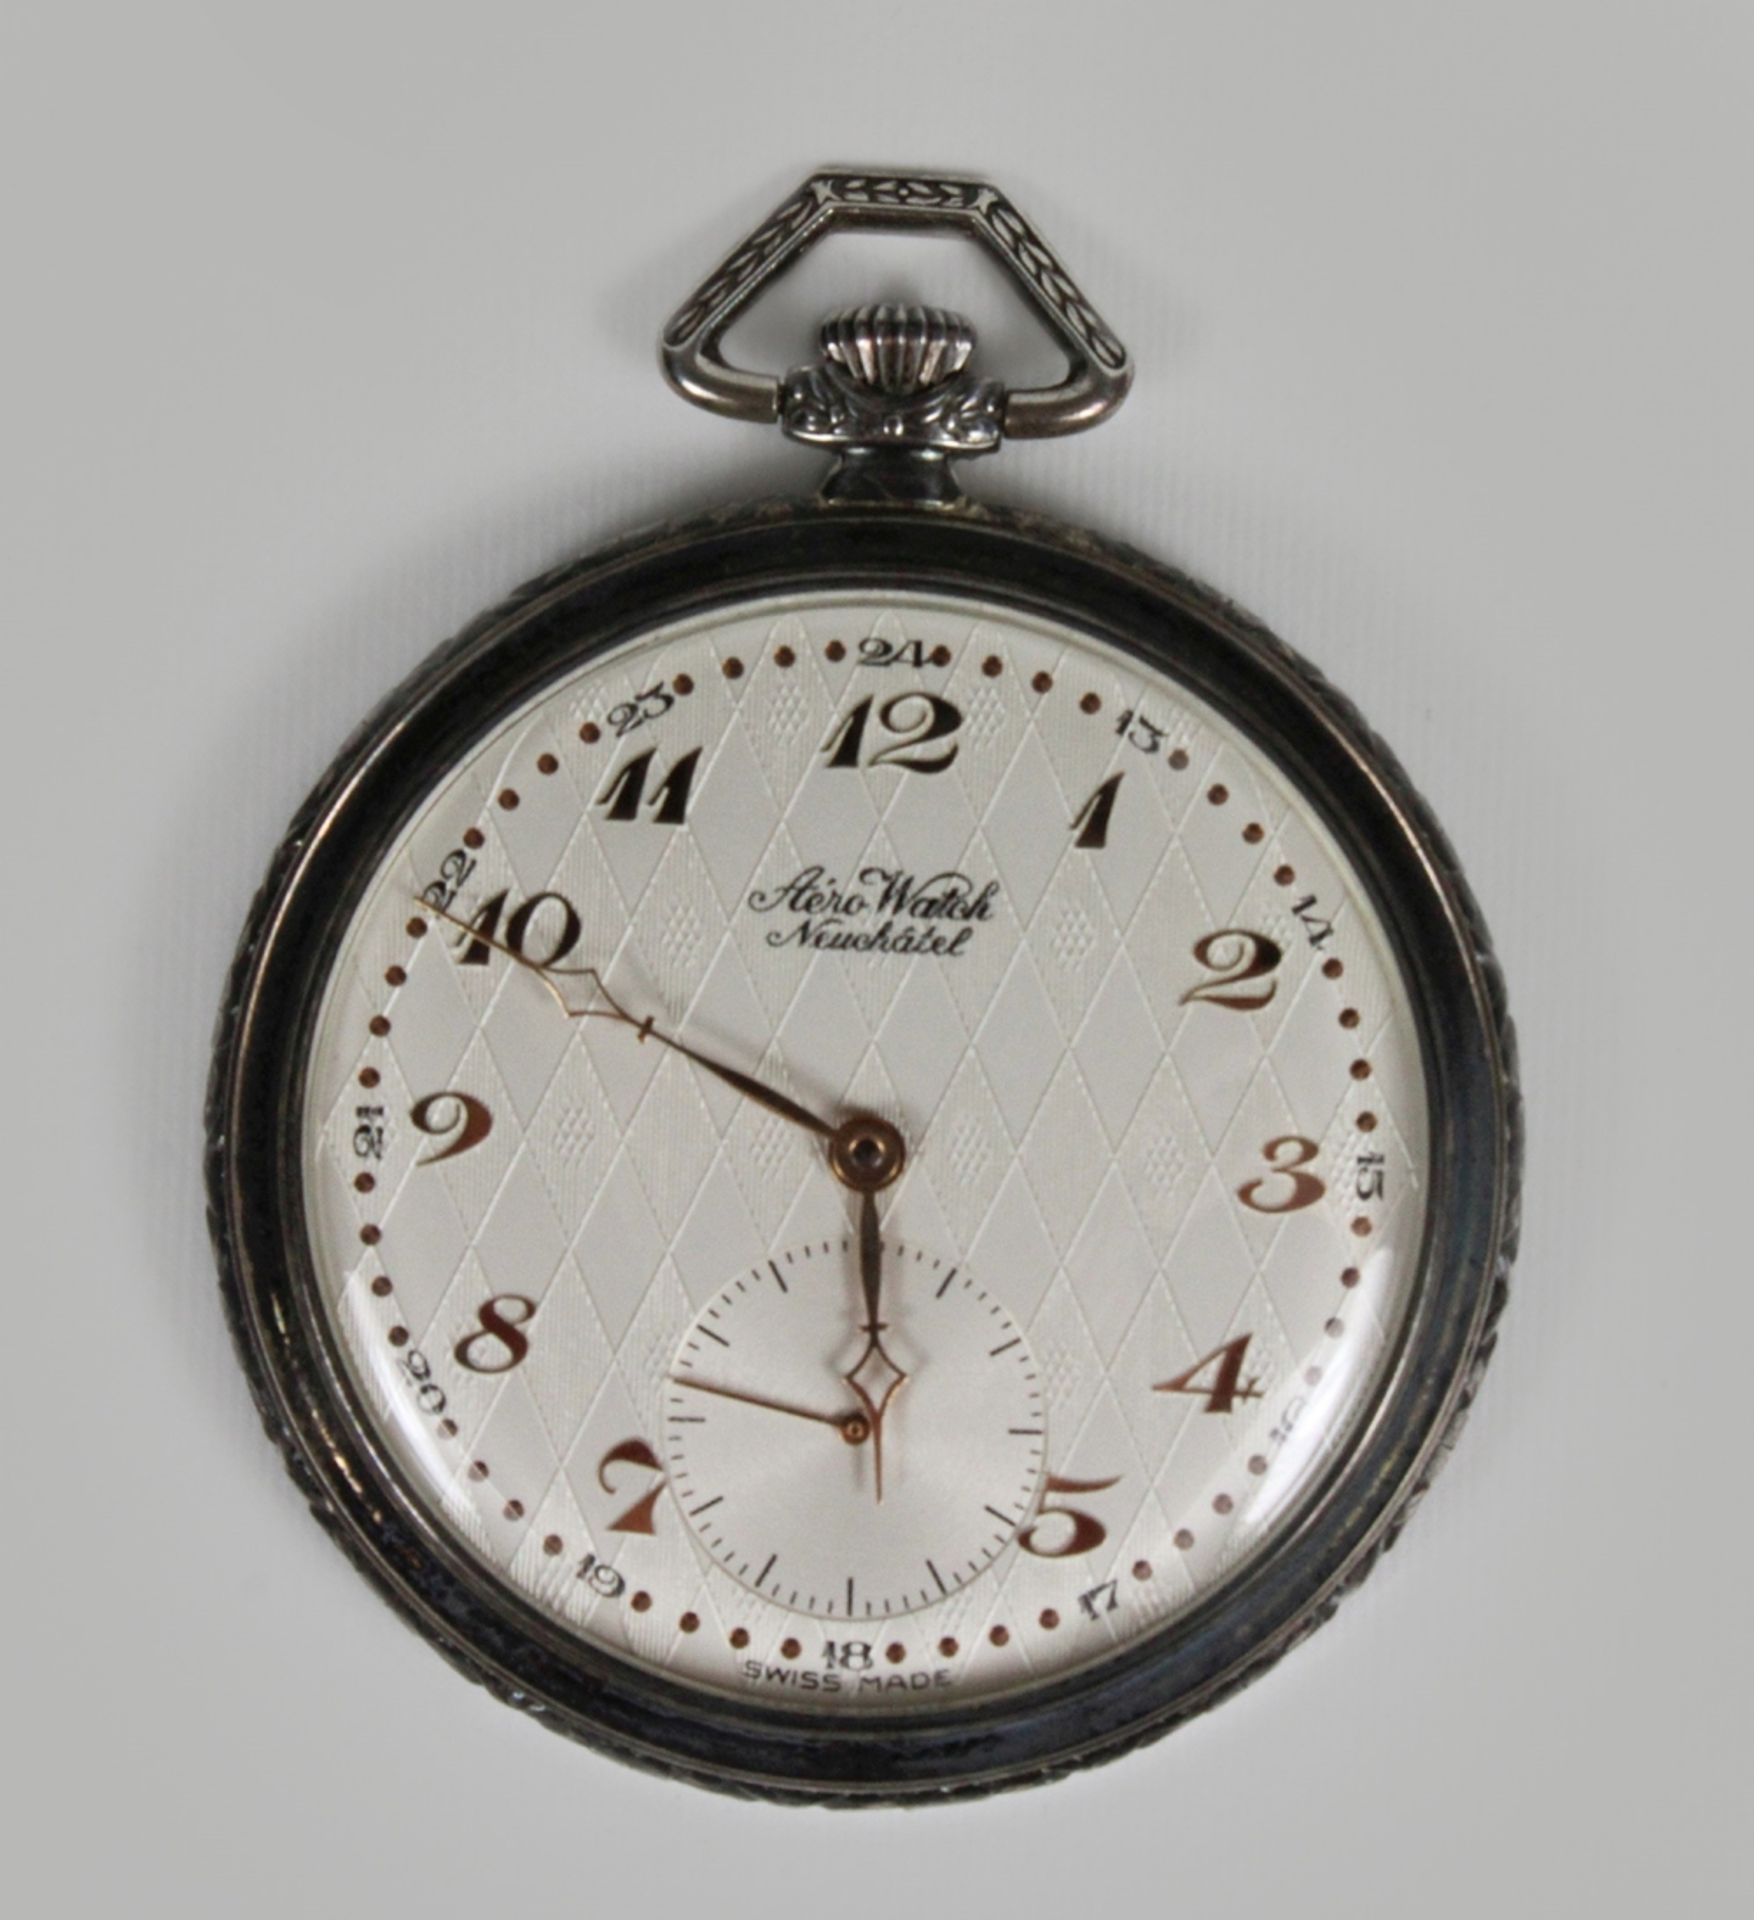 Aero Watch Neuchatel Herrentaschenuhr, Silber, Gewicht: 85 g. Guter Zustand, Uhr läuft.